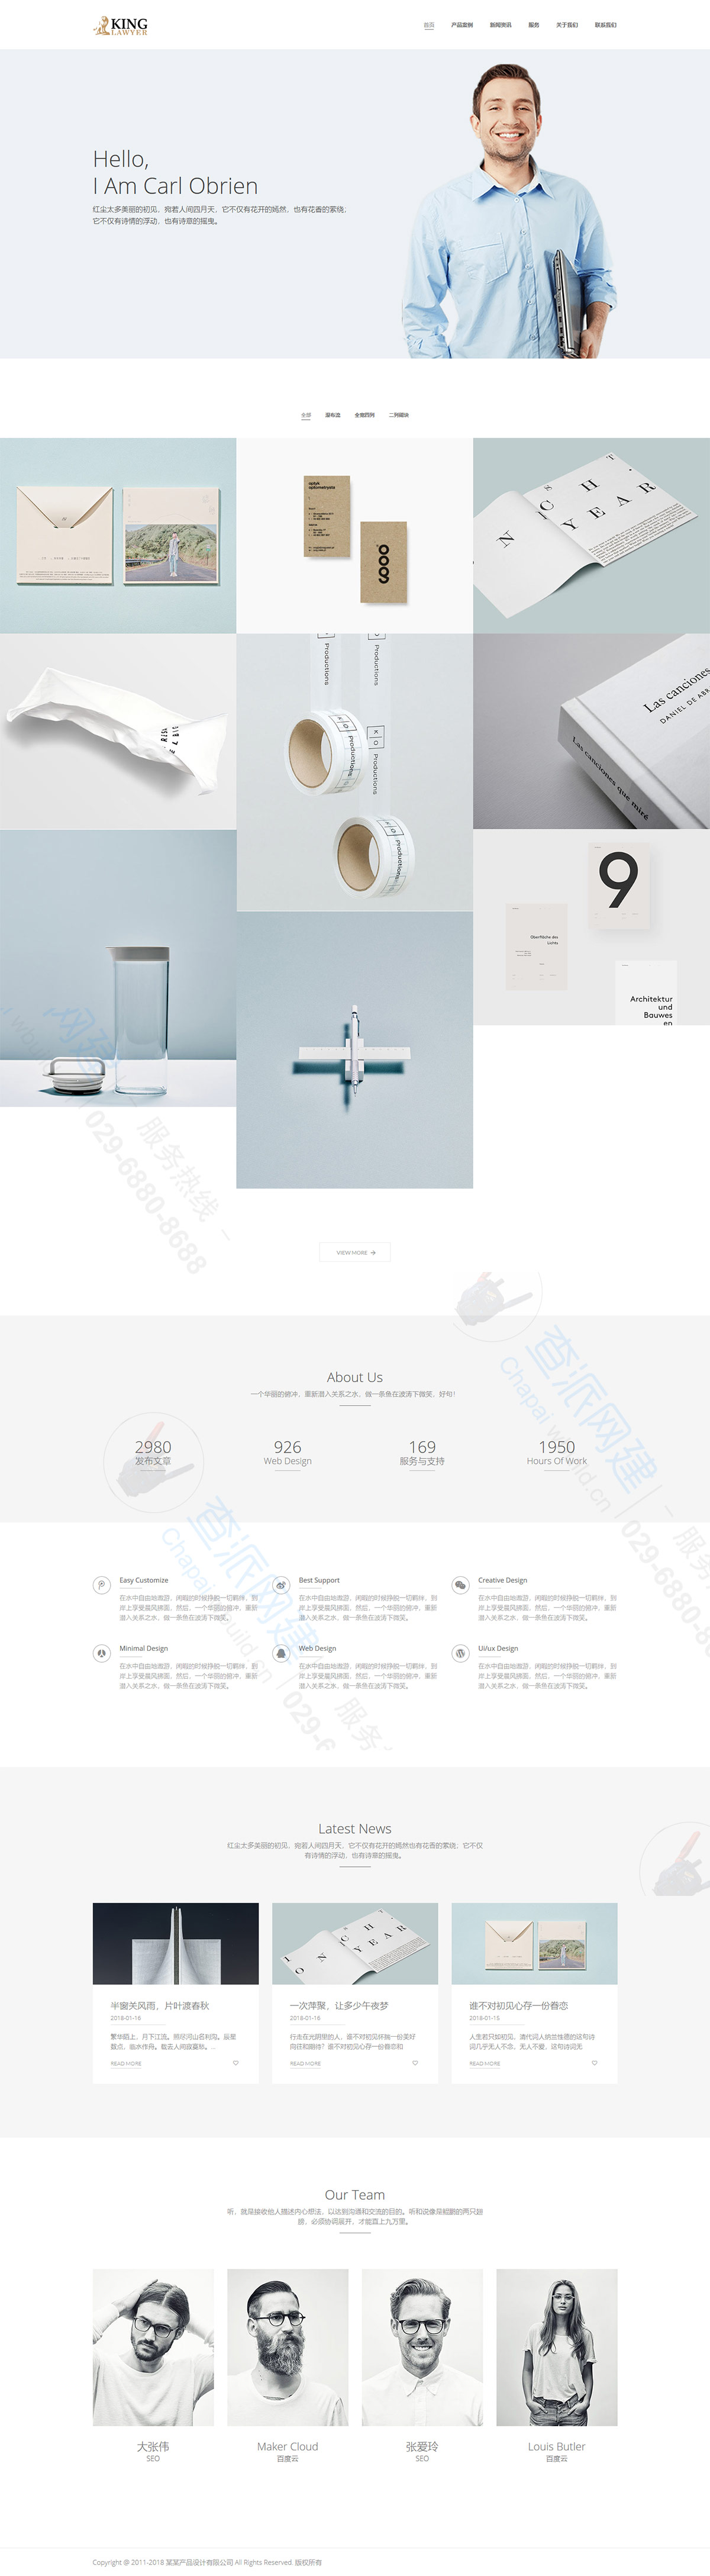 通用产品创意设计类响应式企业网站建设模板(自适应手机端)